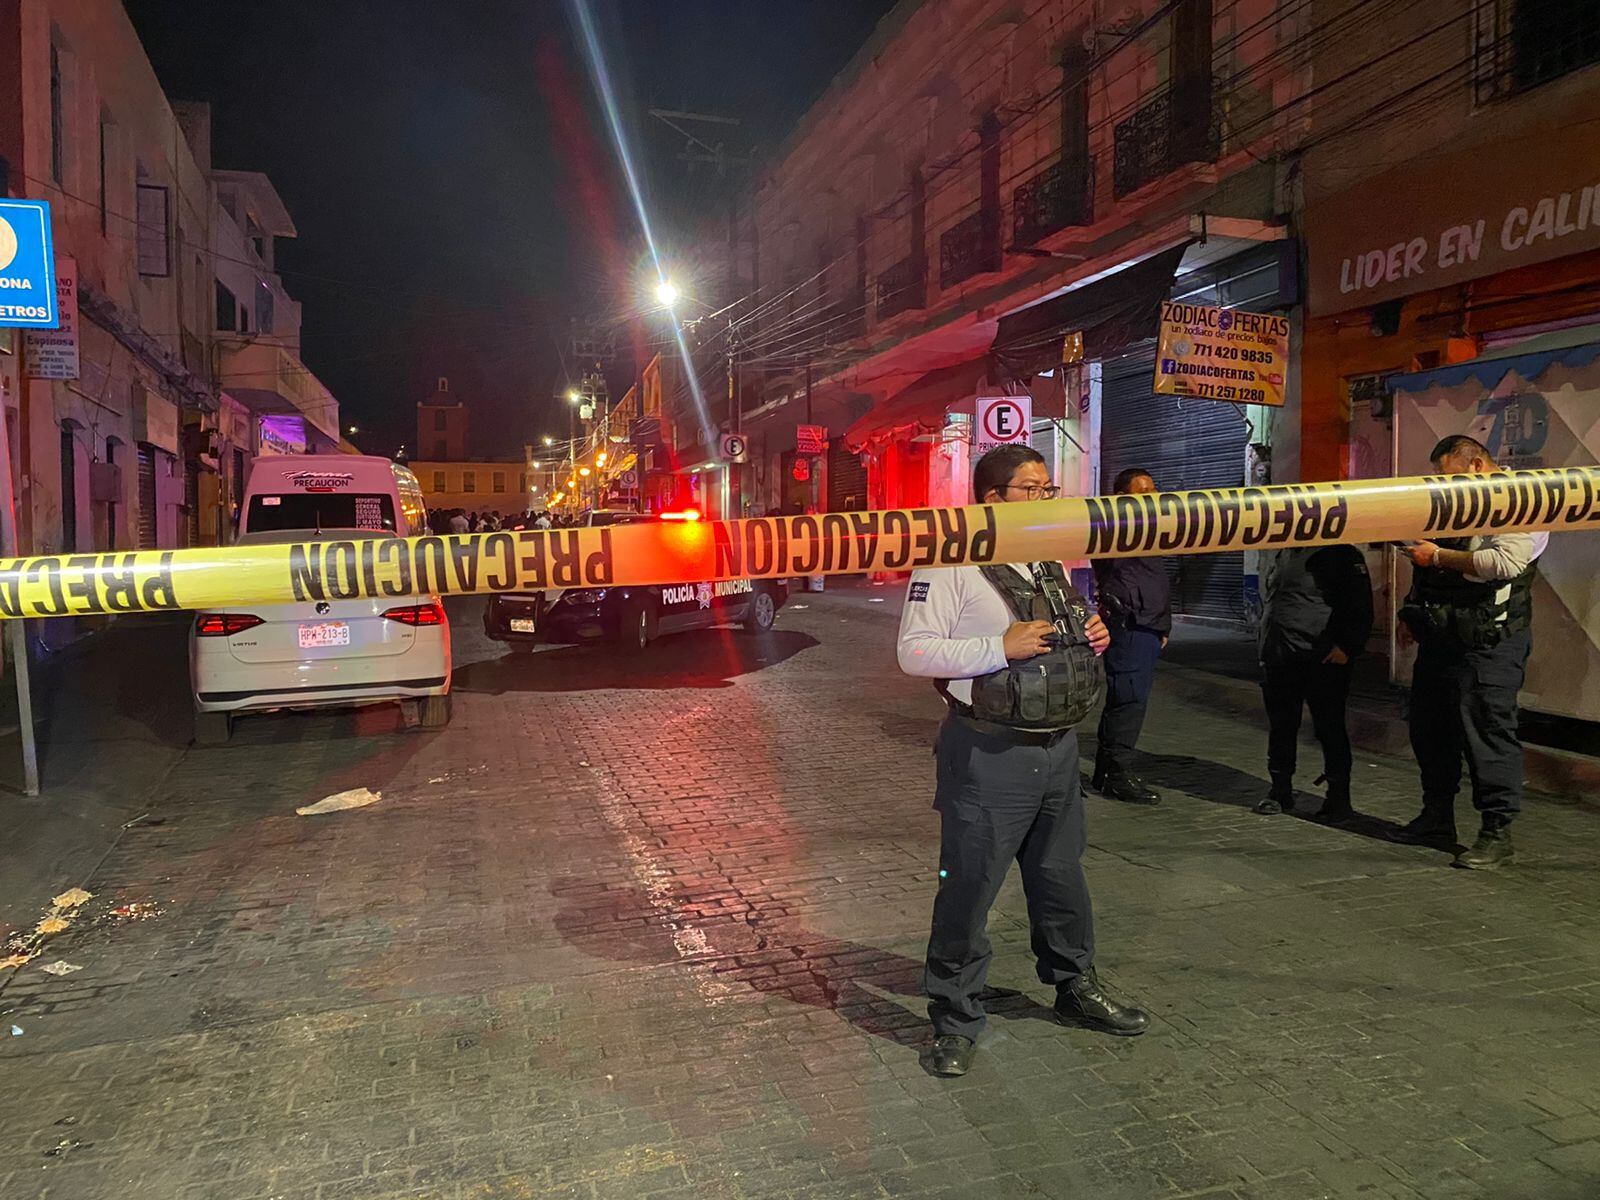 Asesinan a 4 personas en celebración del Mercado “Primero de mayo” en Pachuca Hidalgo